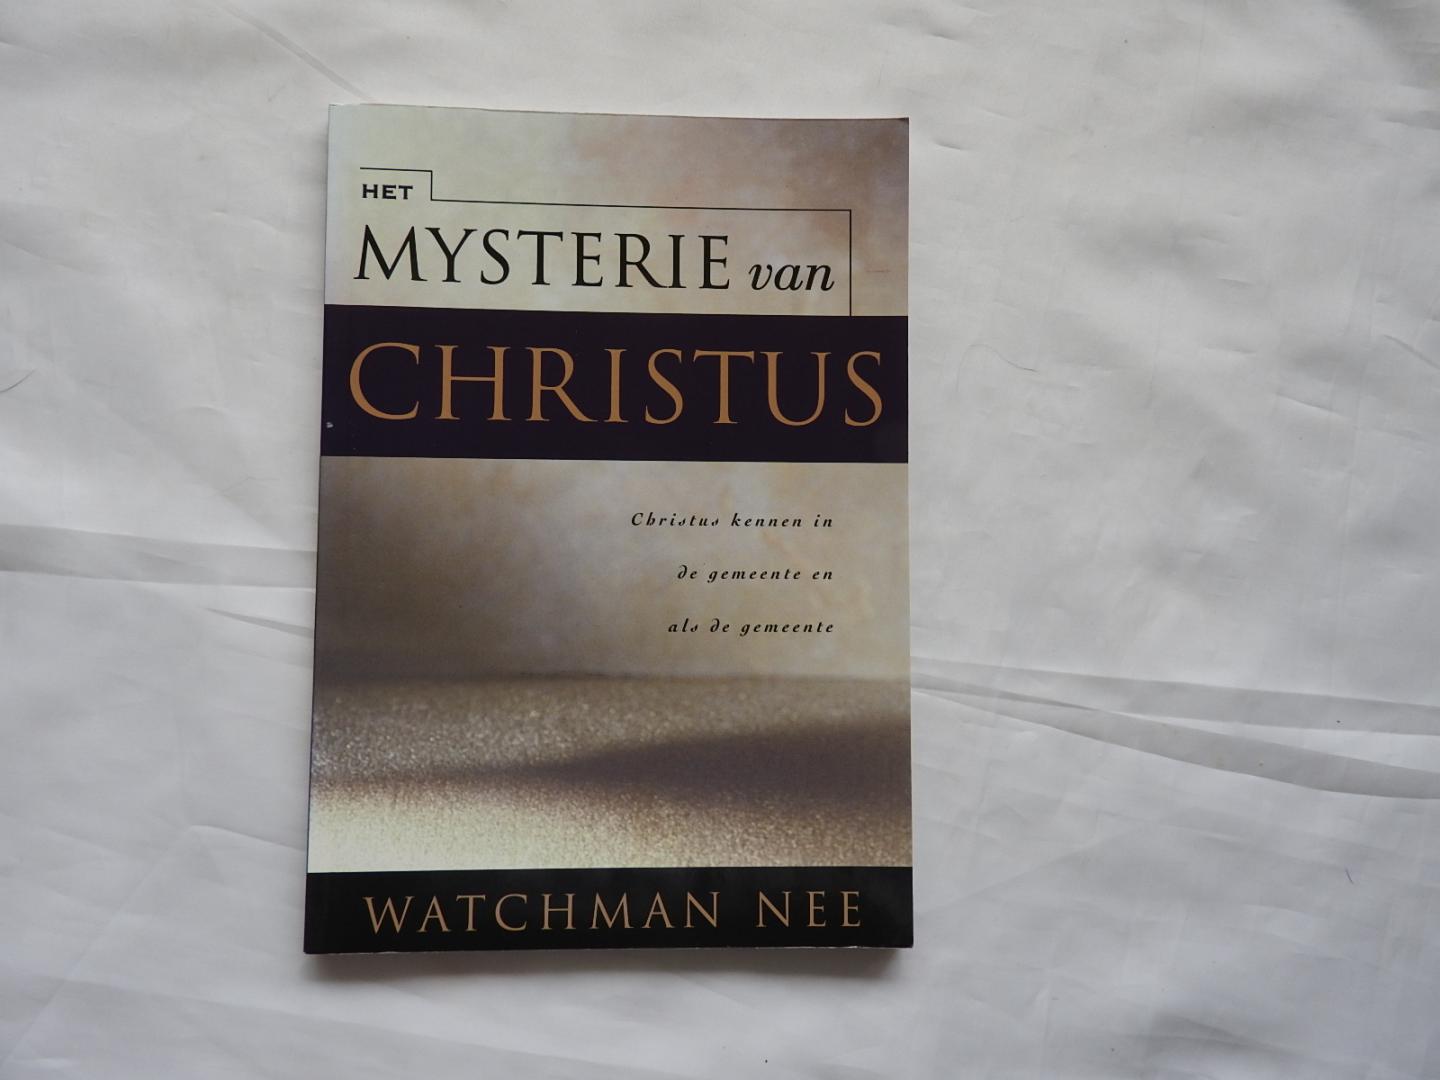 Nee, Watchman - Het mysterie van Christus